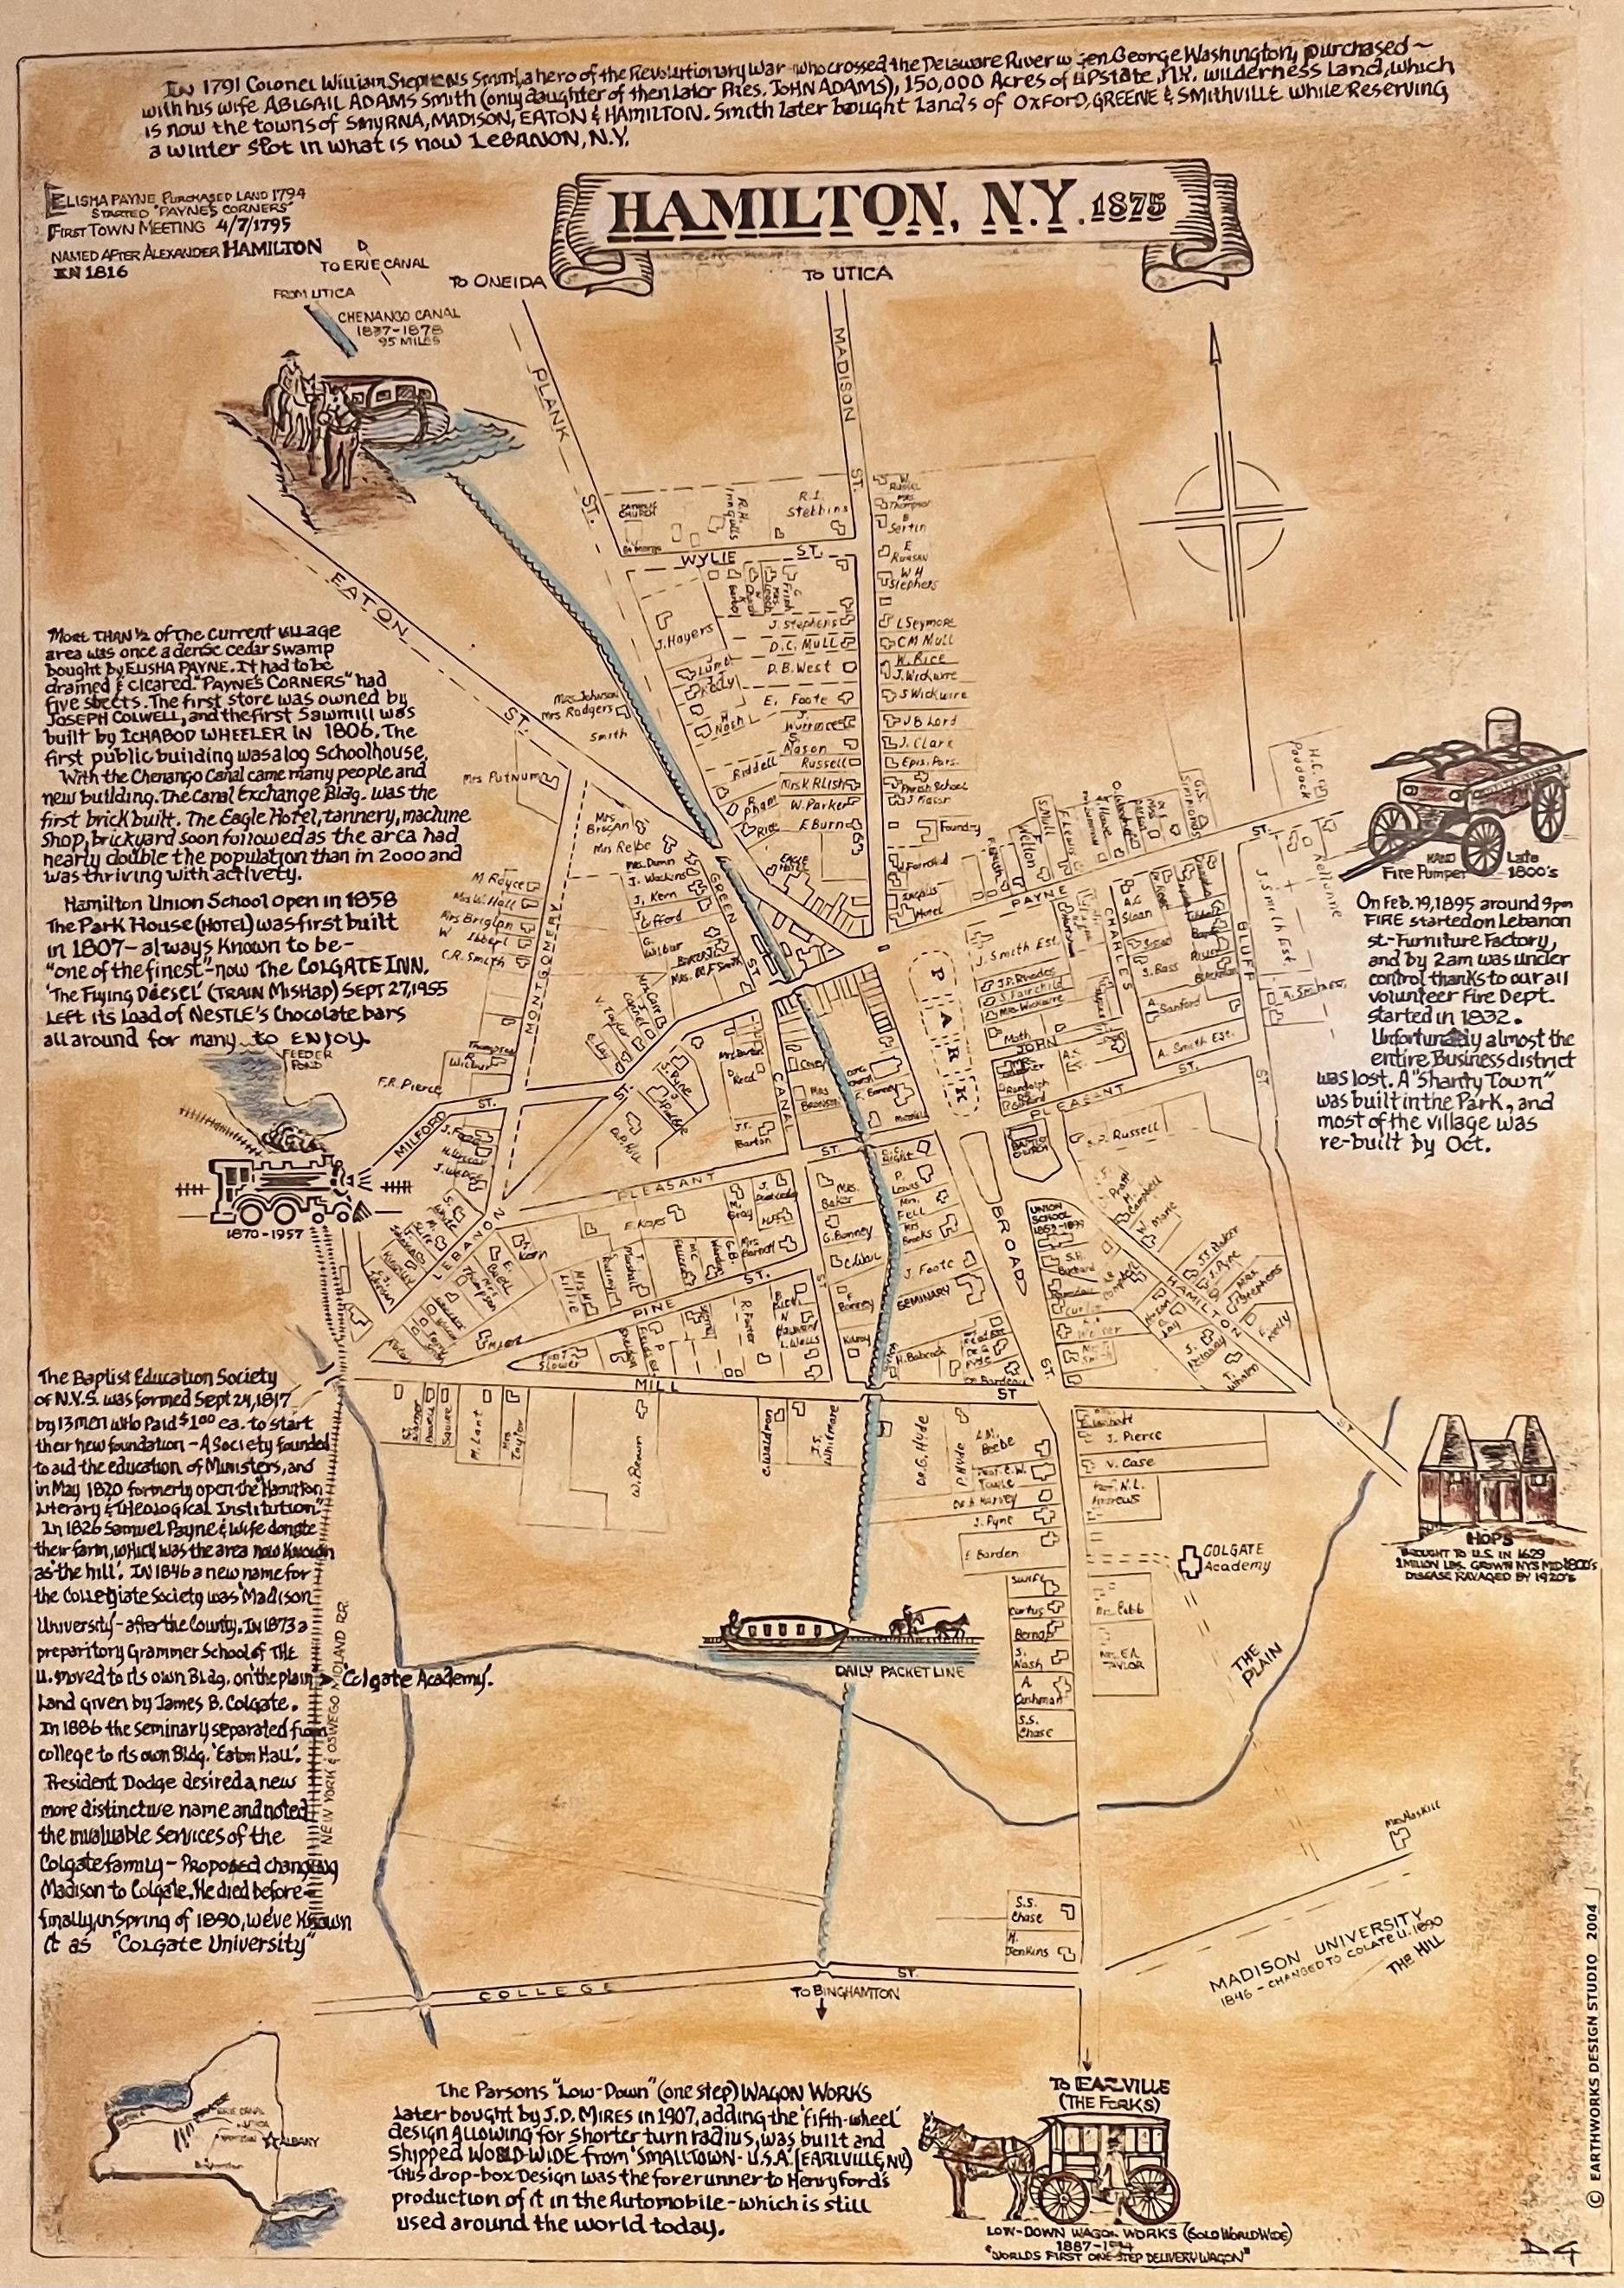 Map of Hamilton from the Hamilton Public Library